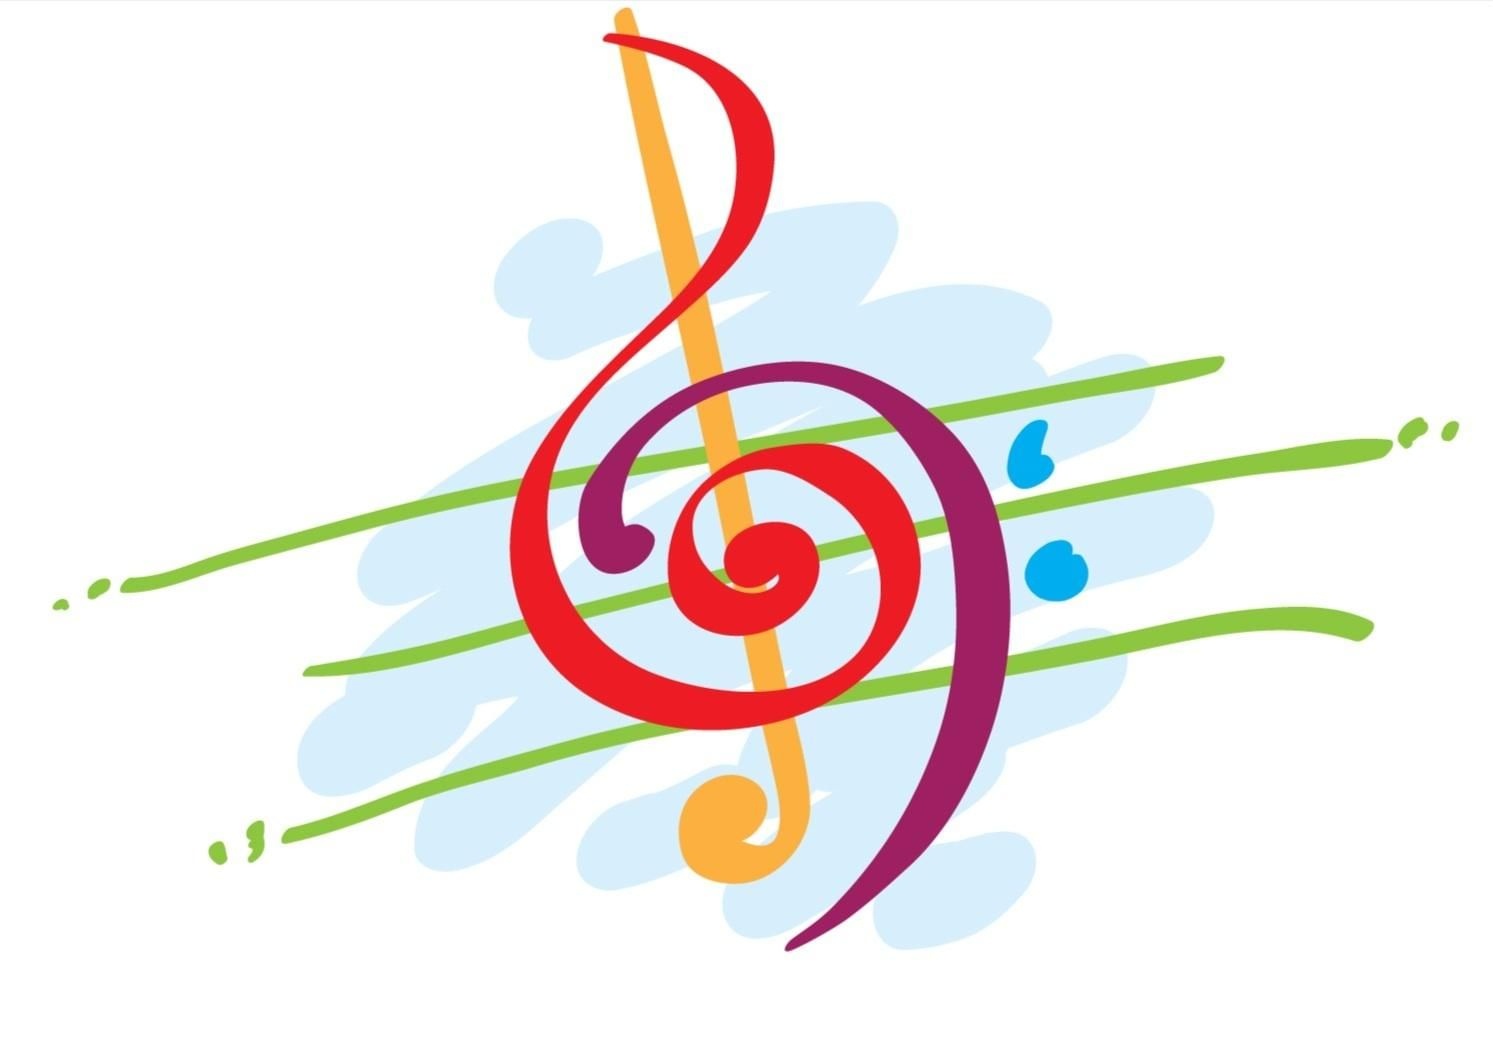 Вокально музыкальные конкурсы. Символ музыкального творчества. Эмблема музыкальной школы. Эмблема музыкального конкурса. Музыкальные символы цветные.